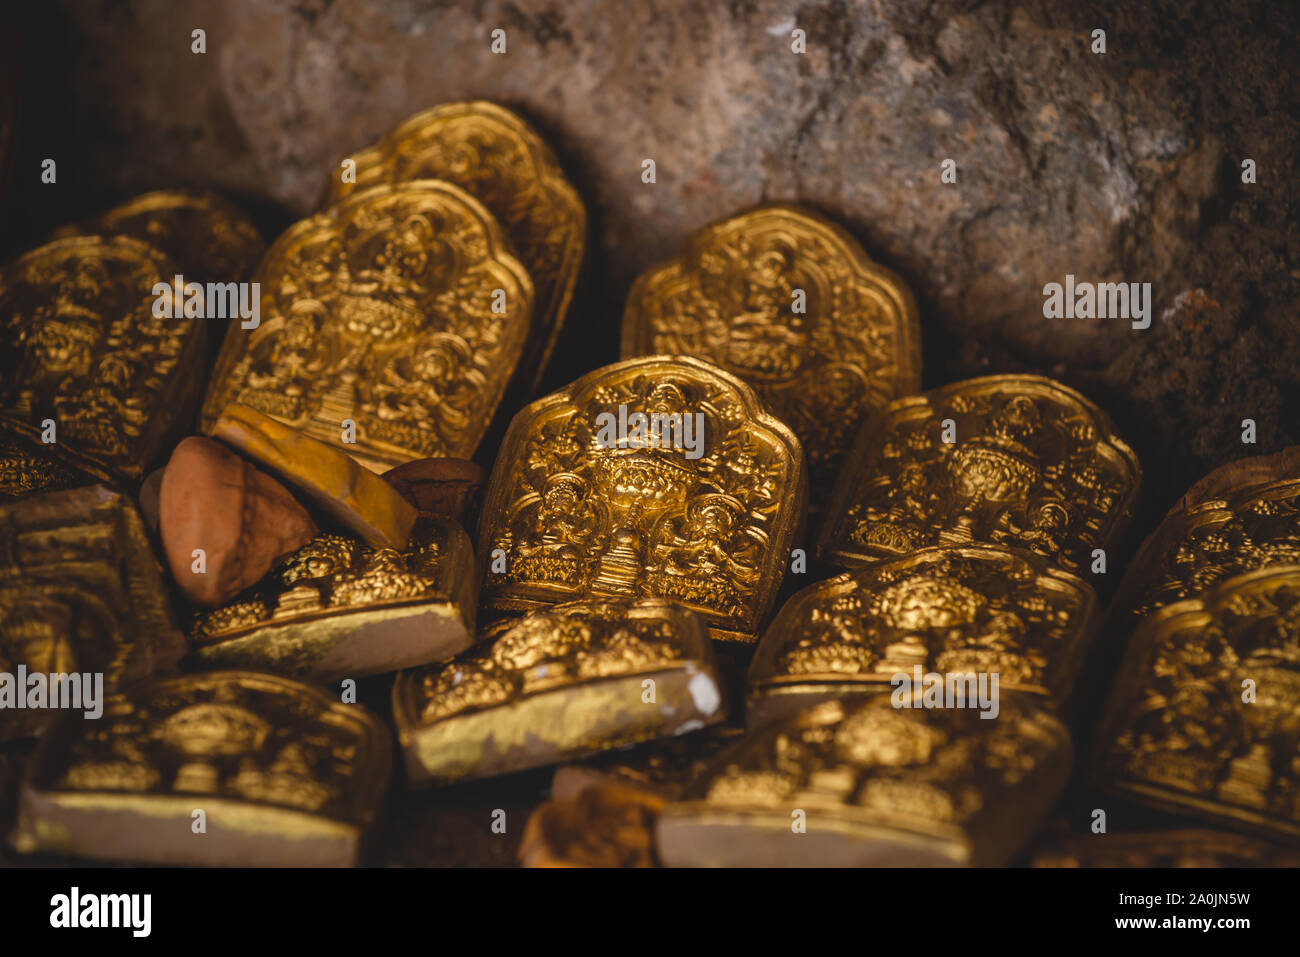 Les petits jetons d'or sont laissés comme offrandes religieuses au monastère de Drepung à Lhassa, au Tibet. Banque D'Images